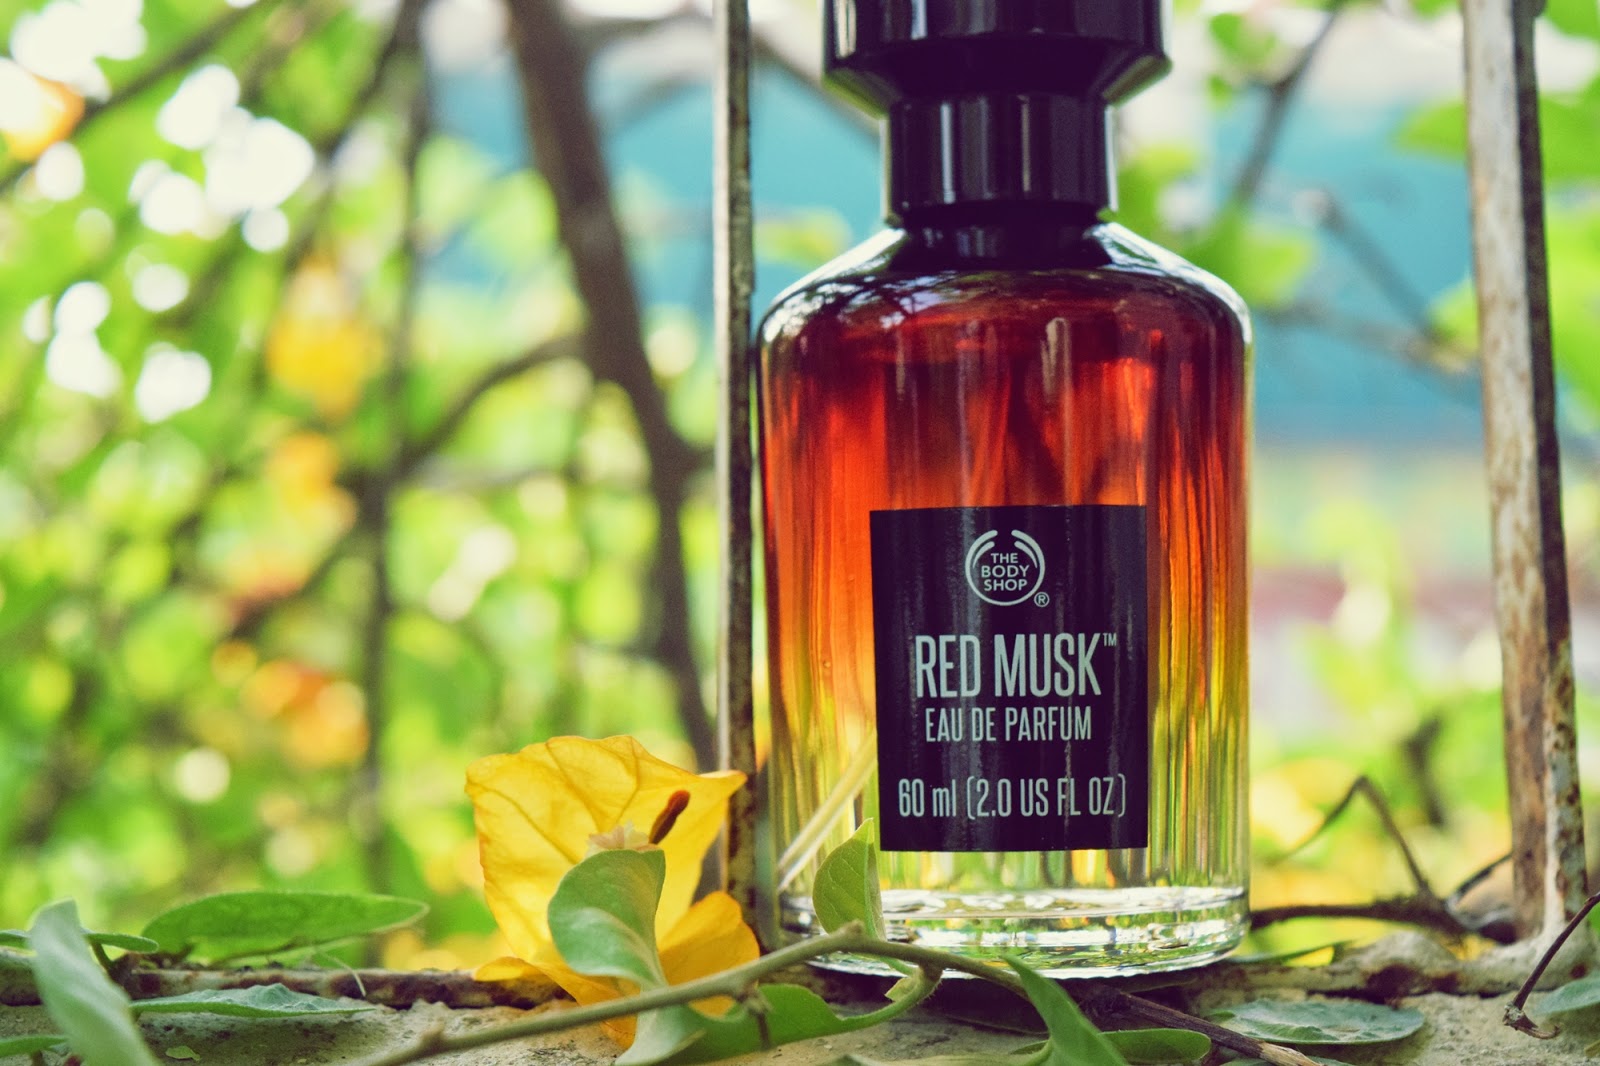 Red Musk Eau de Parfum by The Body Shop